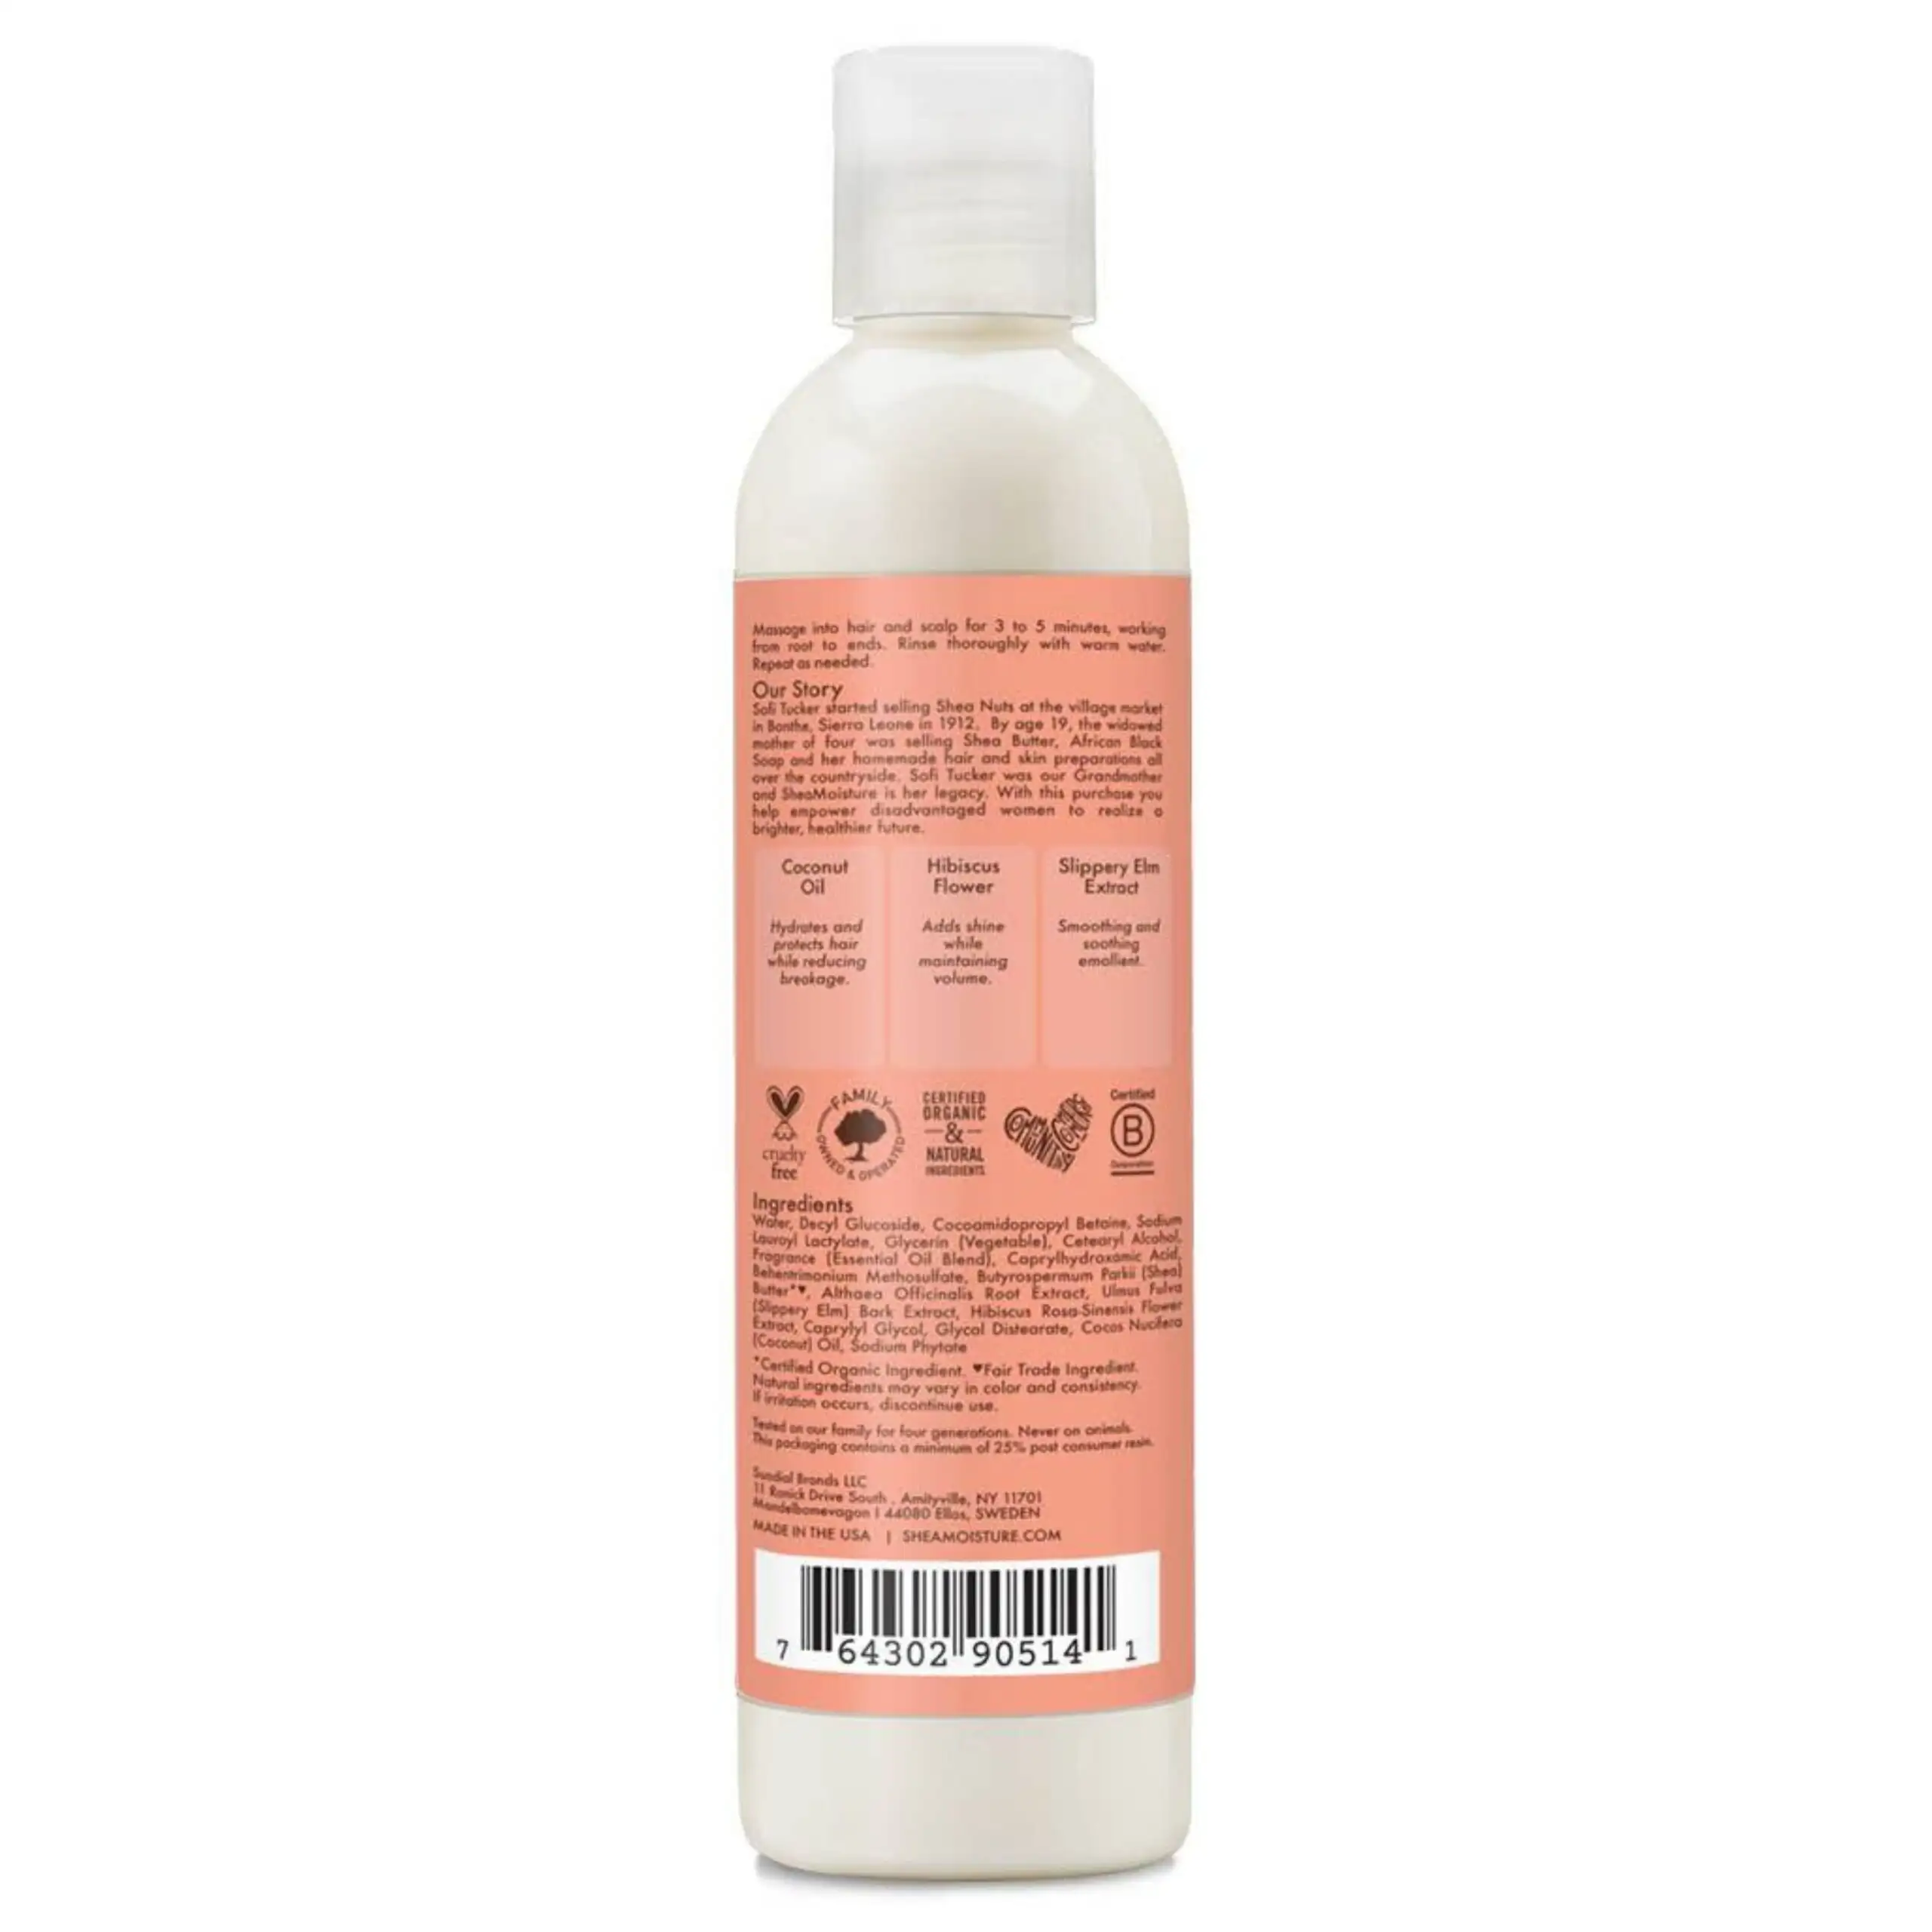 Shea moisture coconut hibiscus kids 2 en 1 curl shine shampoo conditioner 236 ml_3775. Bienvenue sur DIAYTAR SENEGAL - Où Chaque Détail compte. Plongez dans notre univers et choisissez des produits qui ajoutent de l'éclat et de la joie à votre quotidien.